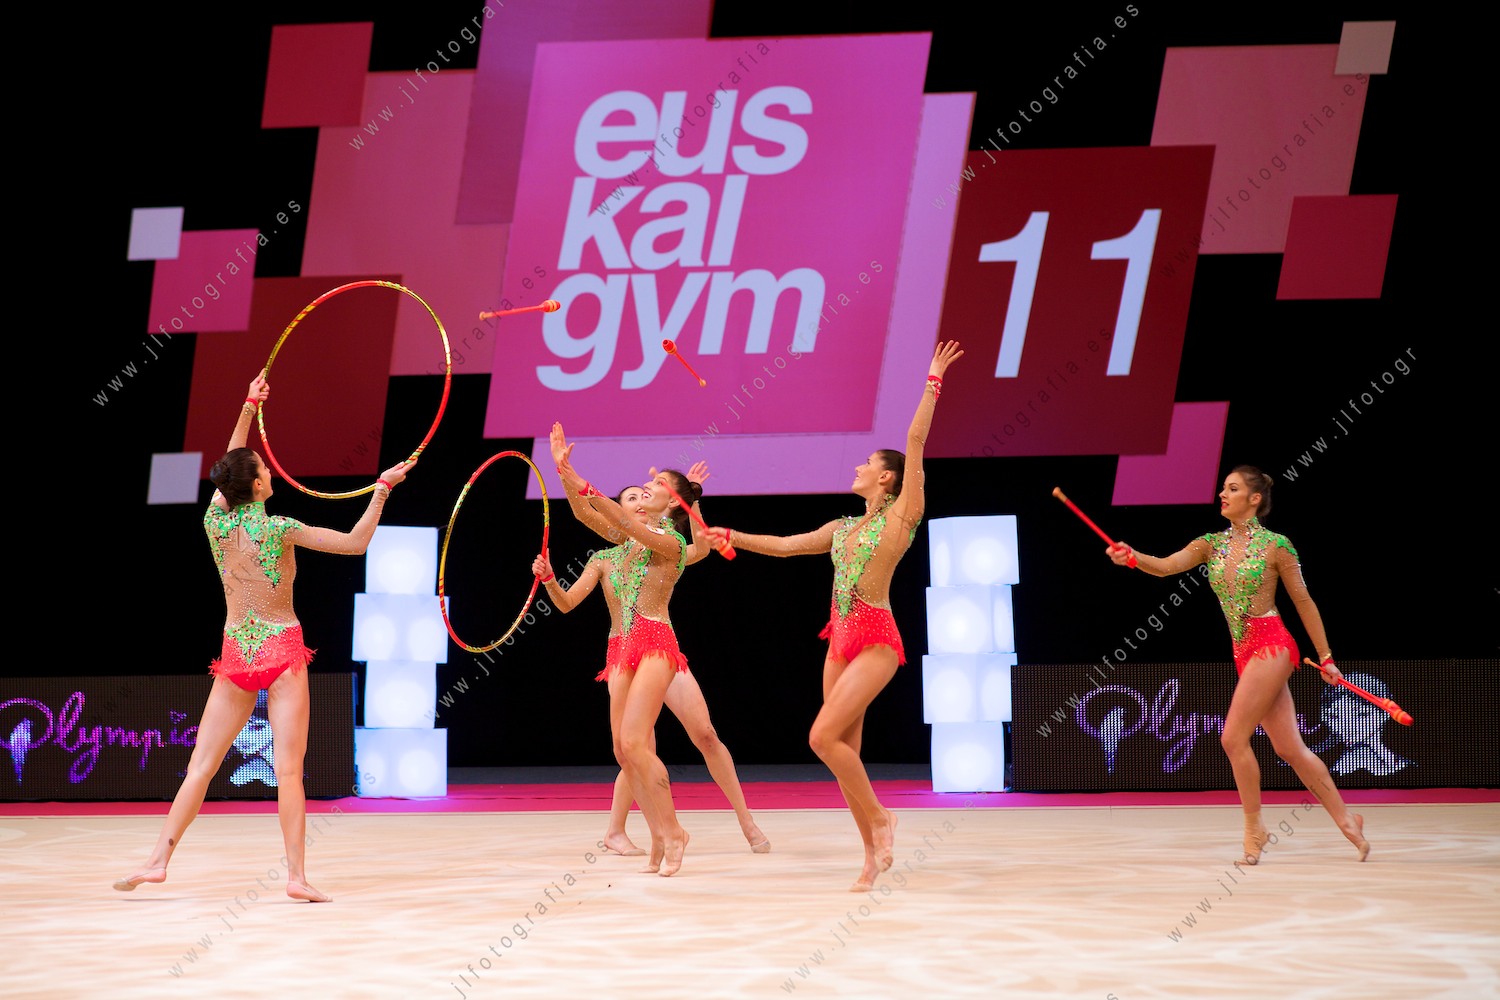 Euskalgym 11 de 2016 en el Fernando Buesa Arena, equipo español femenino, medalla de plata en las olimpiadas de Brasil. 